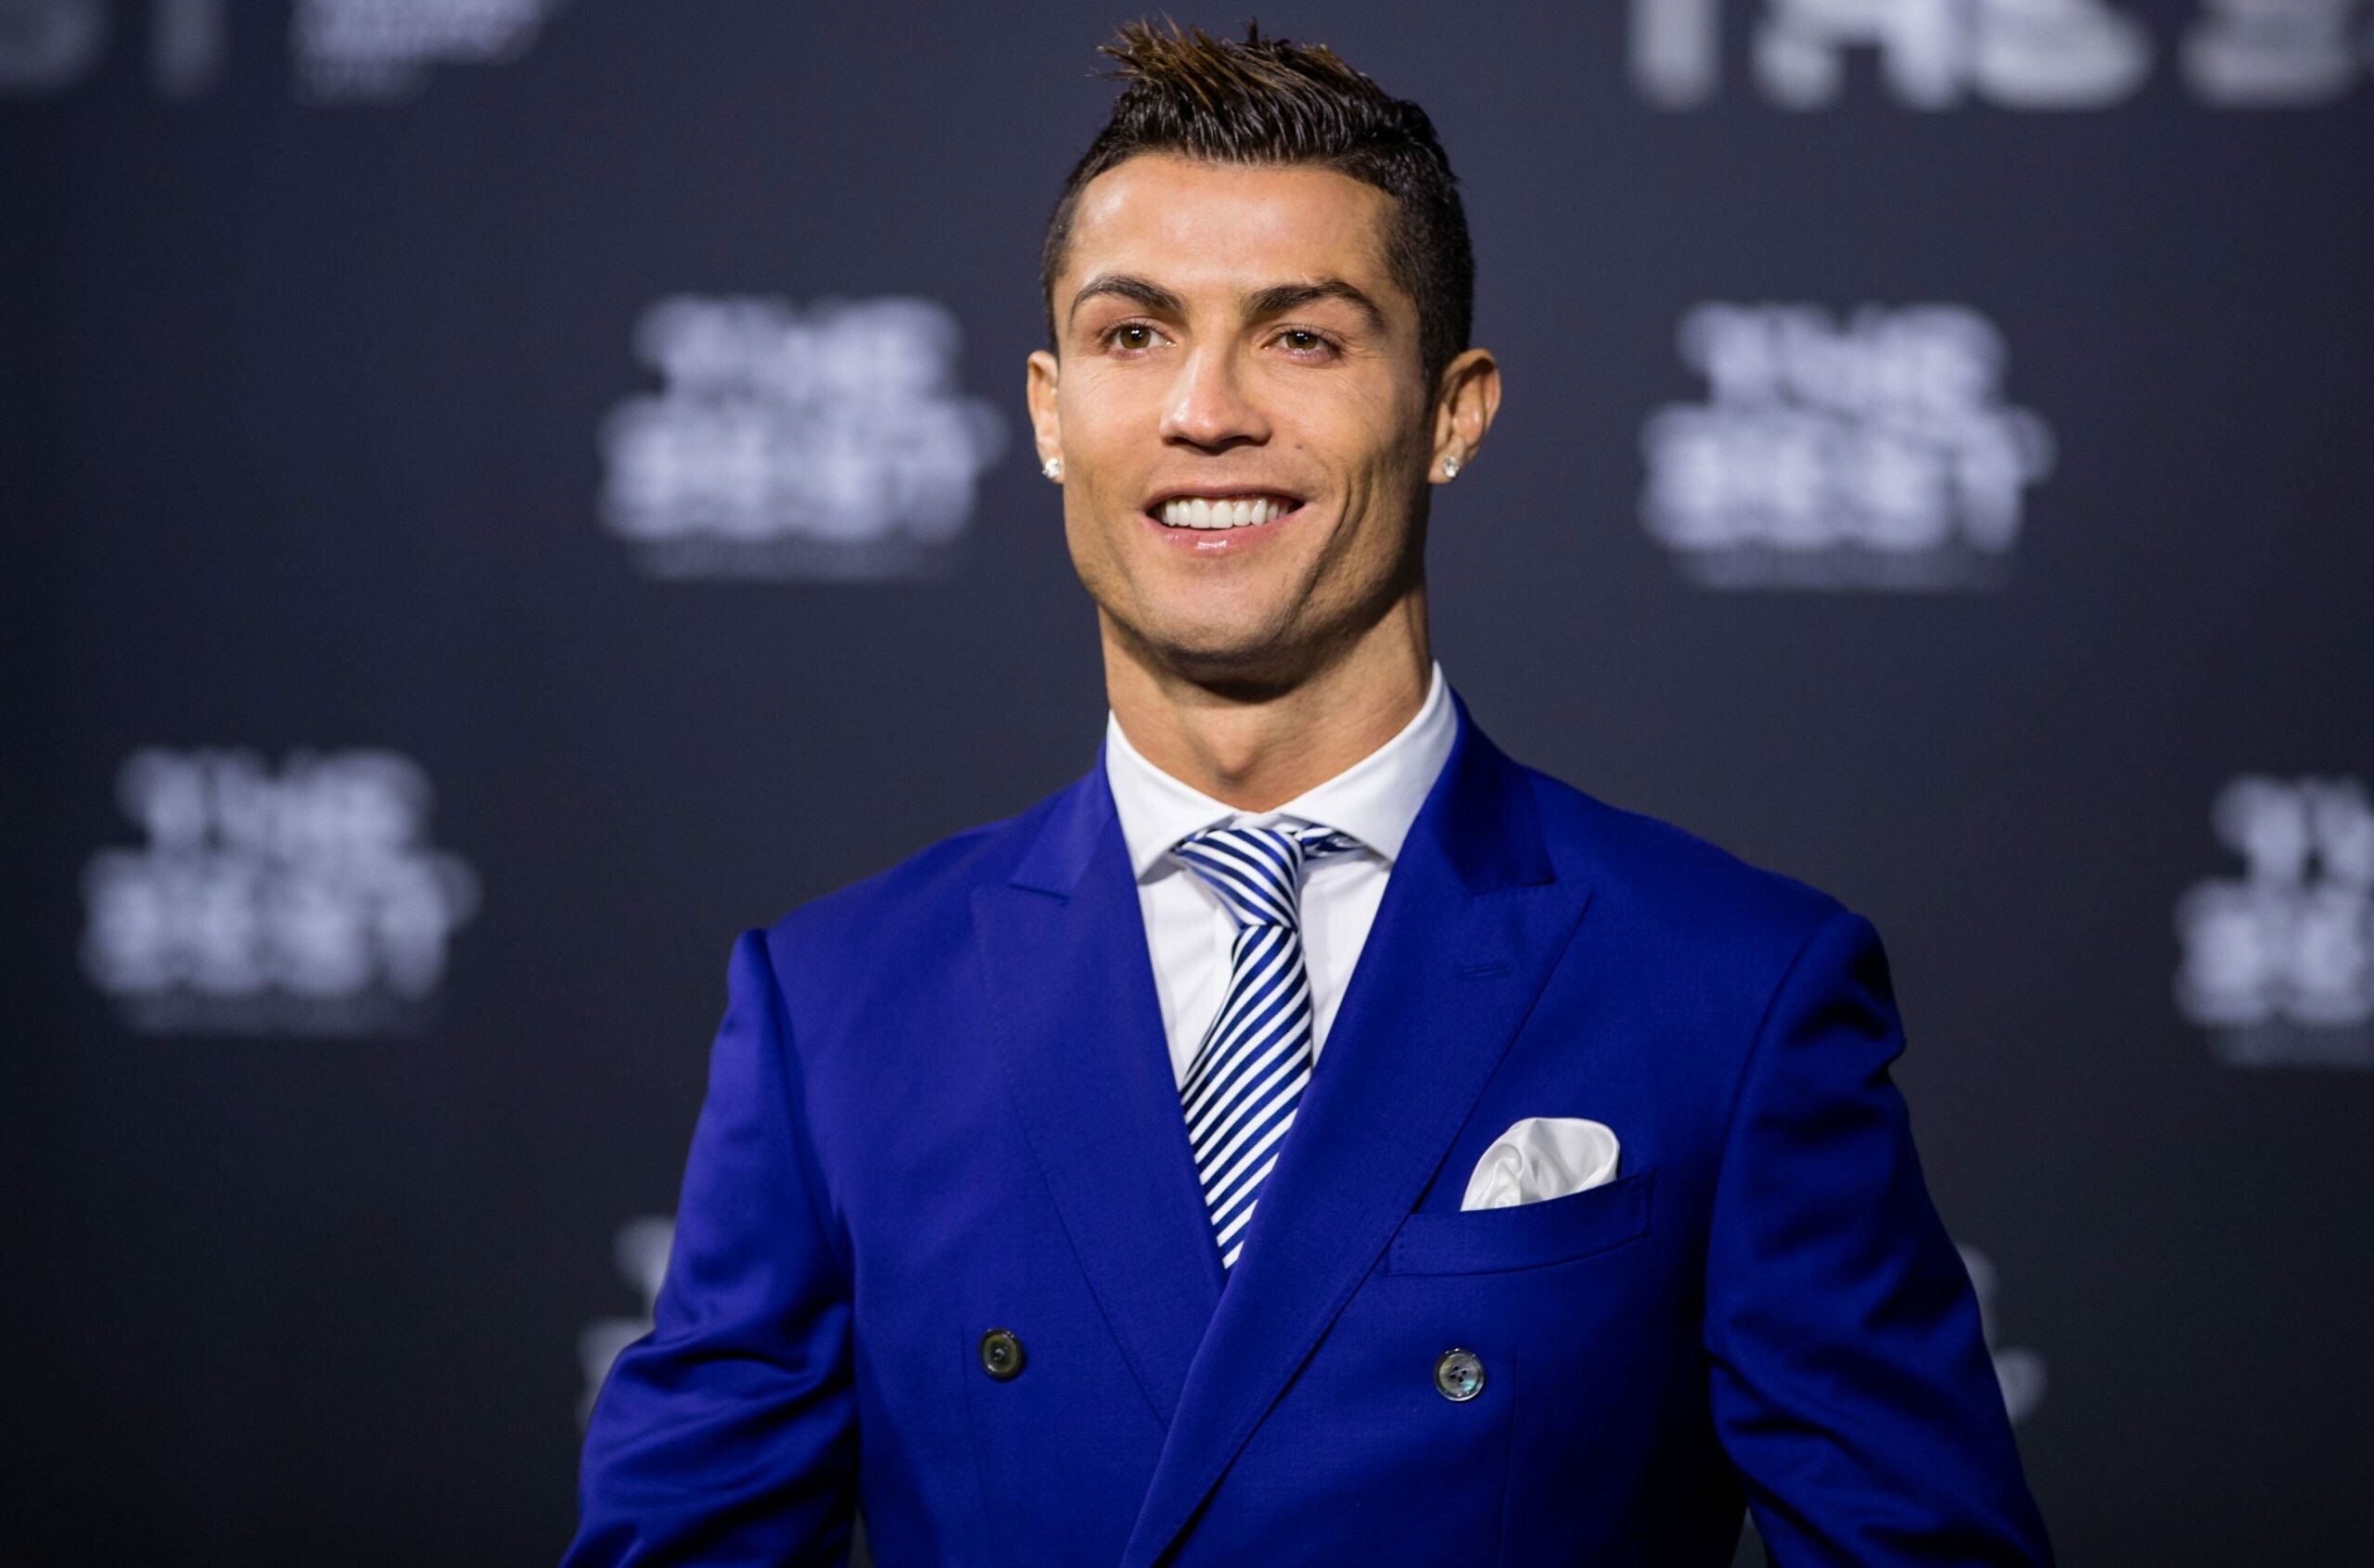 Cristiano Ronaldo: Won his first Ballon d'Or at age 23, A Portuguese footballer. 2560x1700 HD Wallpaper.